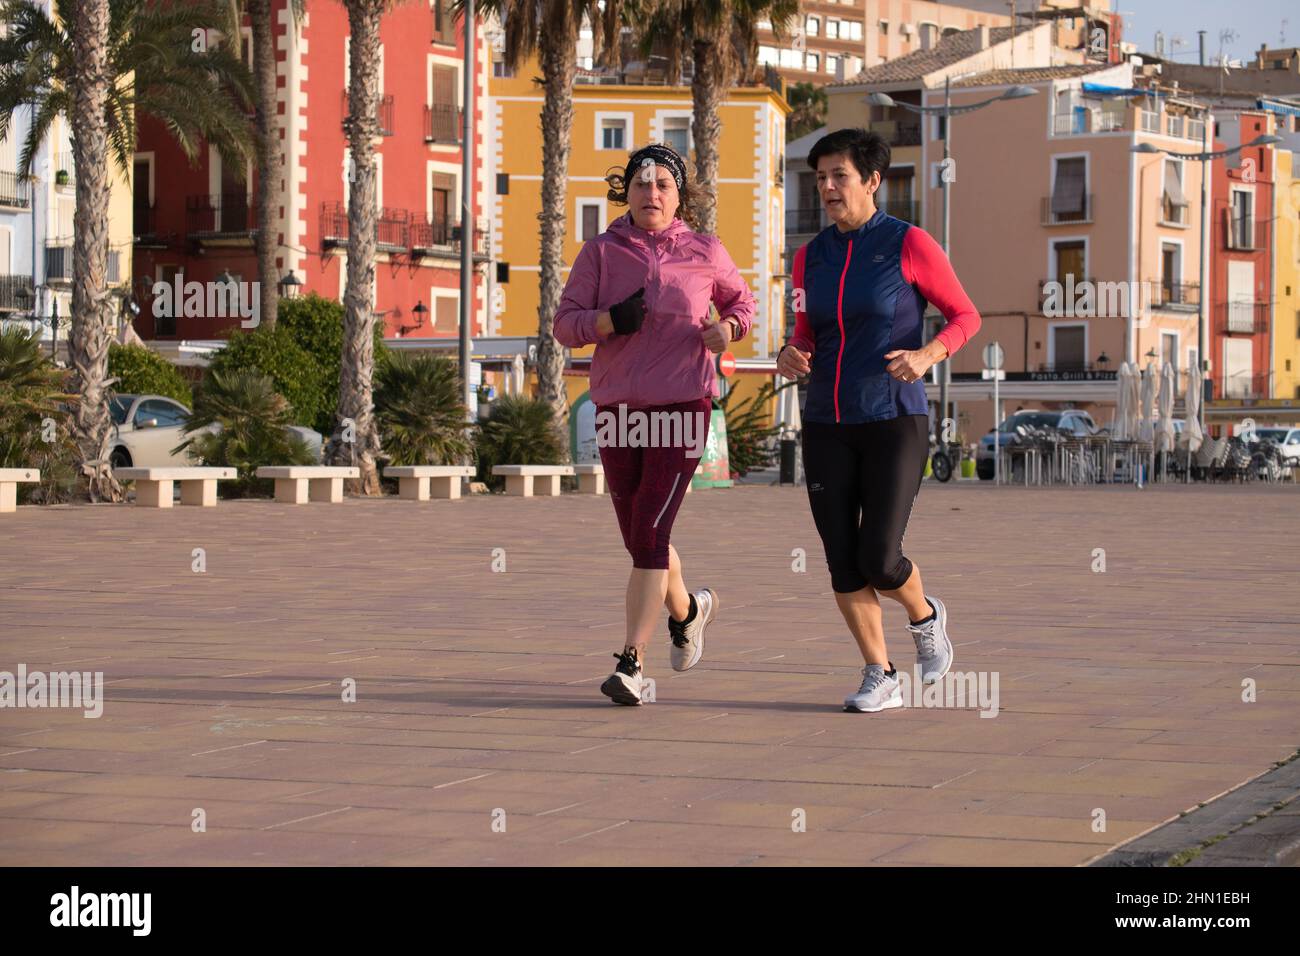 Villajoysta Alicante Spain 02.13.22 zwei ältere Damen tragen Leggings und langärmelige winddichte Westen beim Joggen entlang einer Fußgängerzone. Palmen. Stockfoto